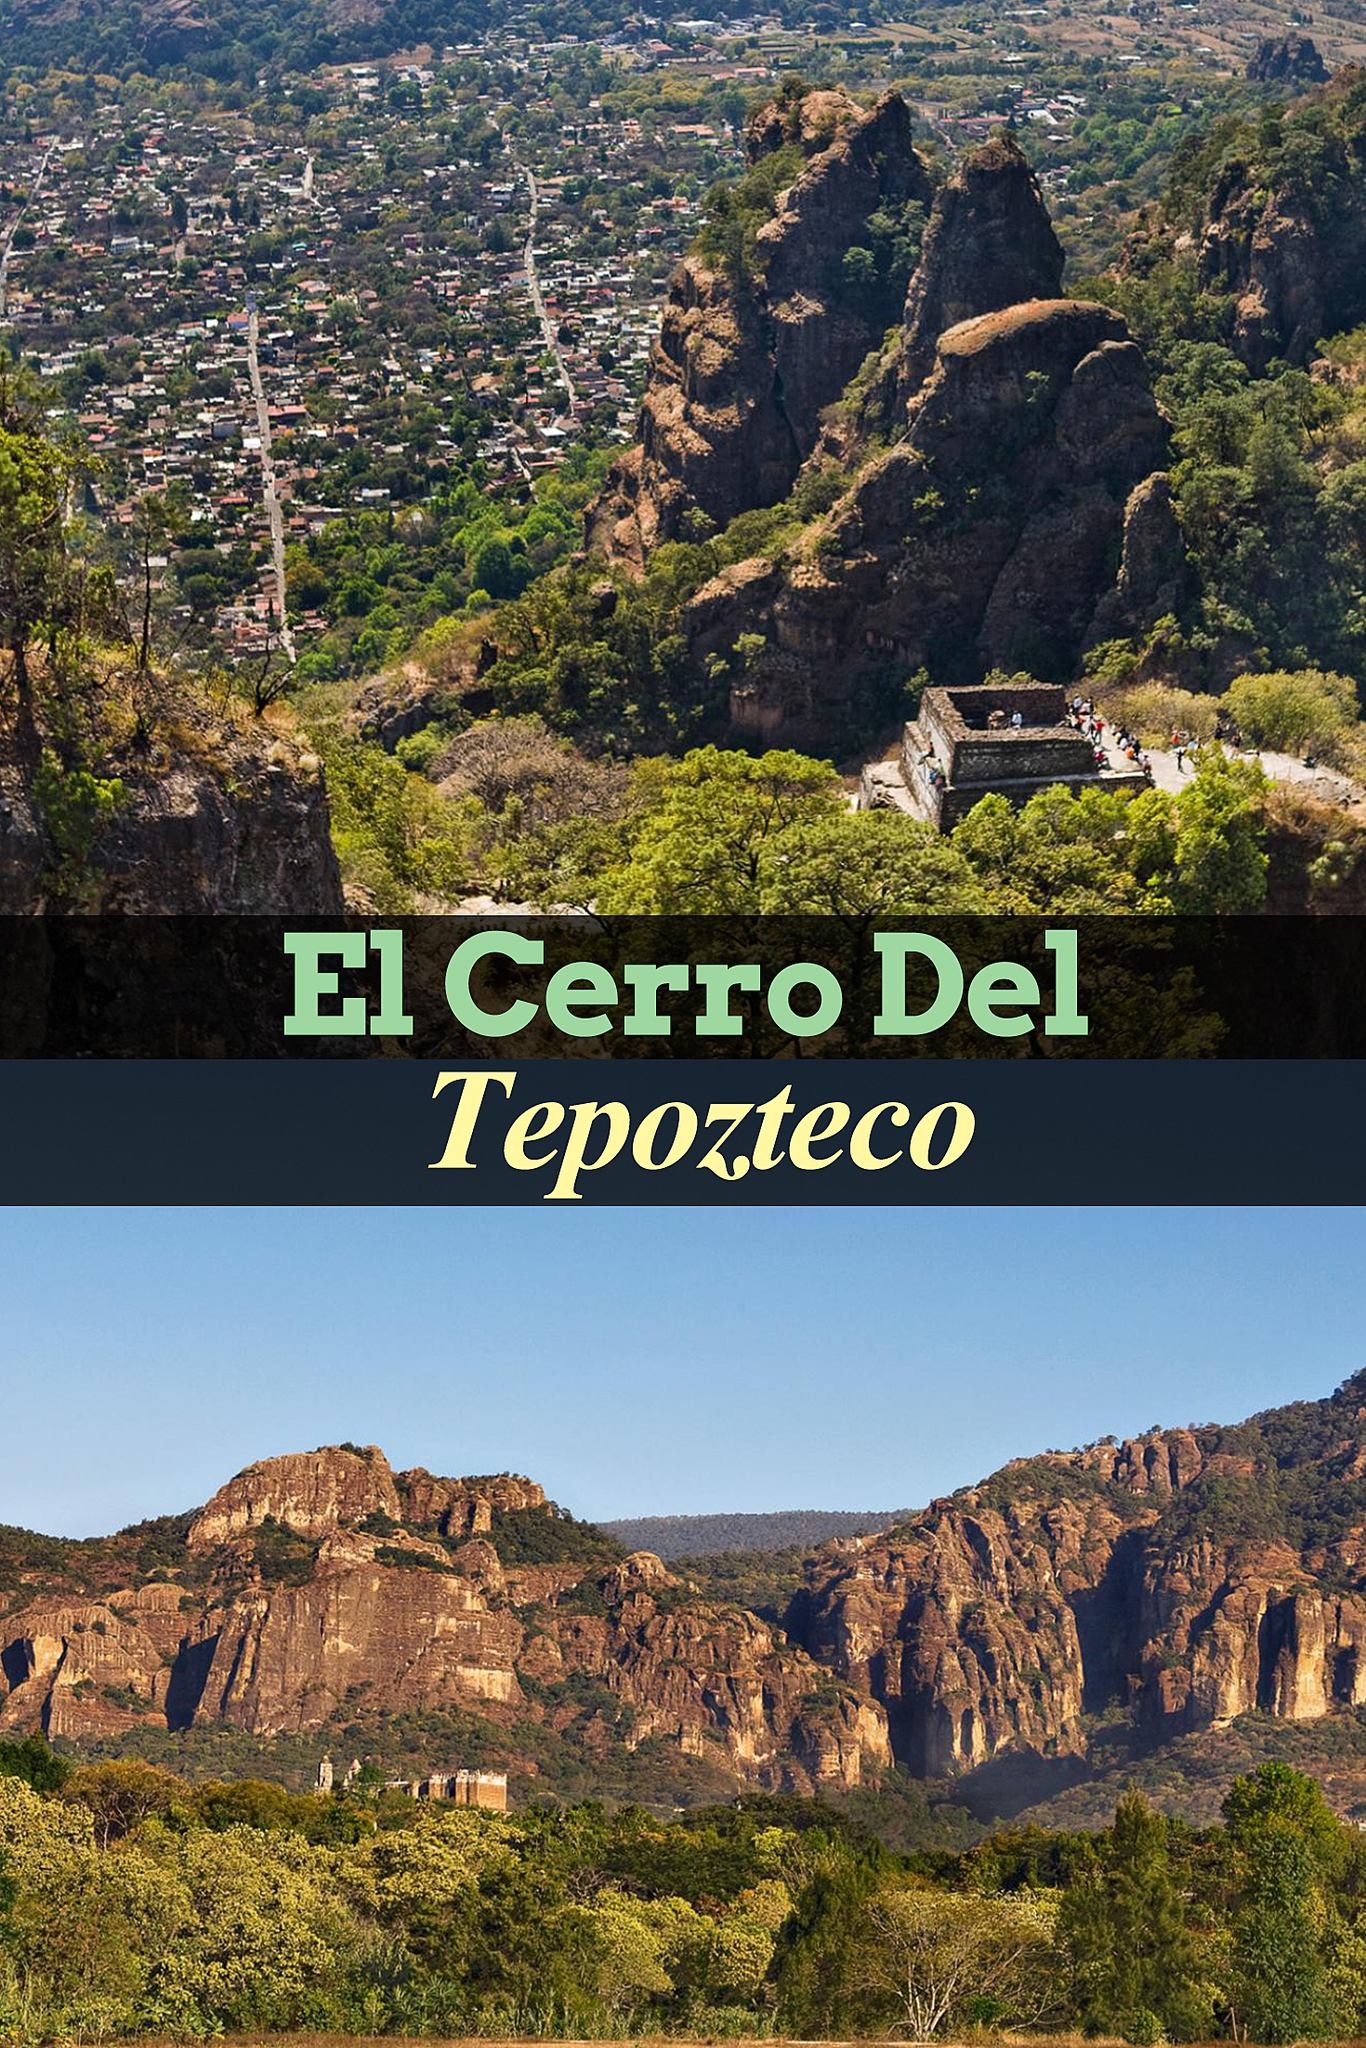 El Cerro del Tepozteco: lo que debes saber antes de ir